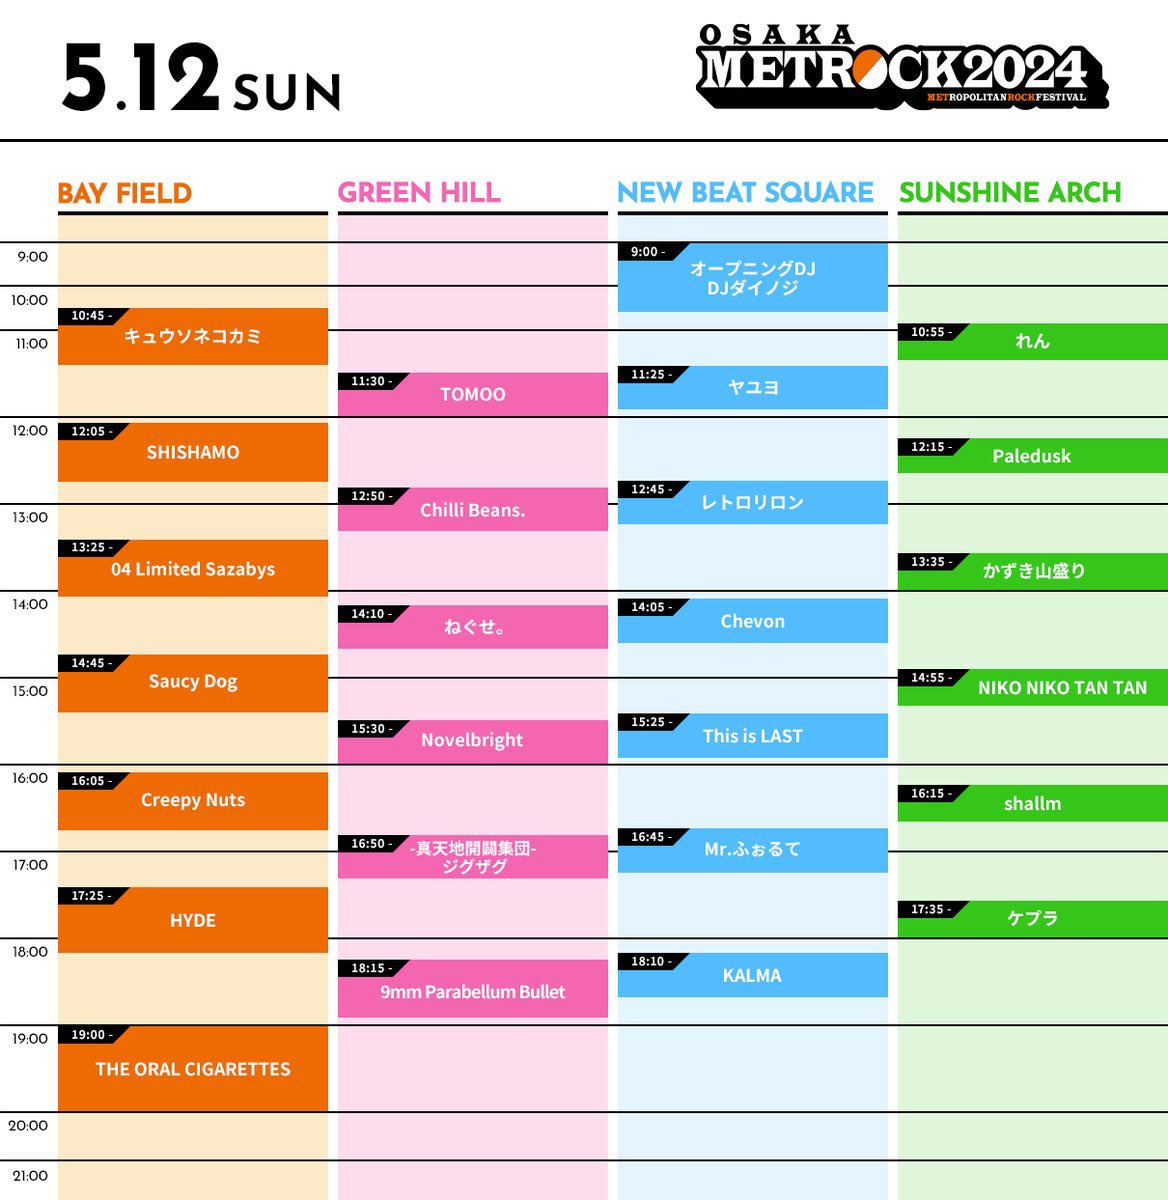 【明日！】 明日は「OSAKA METROPOLITAN ROCK FESTIVAL 2024」に出演します！ オーラルは19:00〜BAY FIELDにて大トリを務めます🔥🔥 グッズ販売は9:00開始予定です！ お待ちしております🙌🏻 ▼イベントHP metrock.jp #メトロック